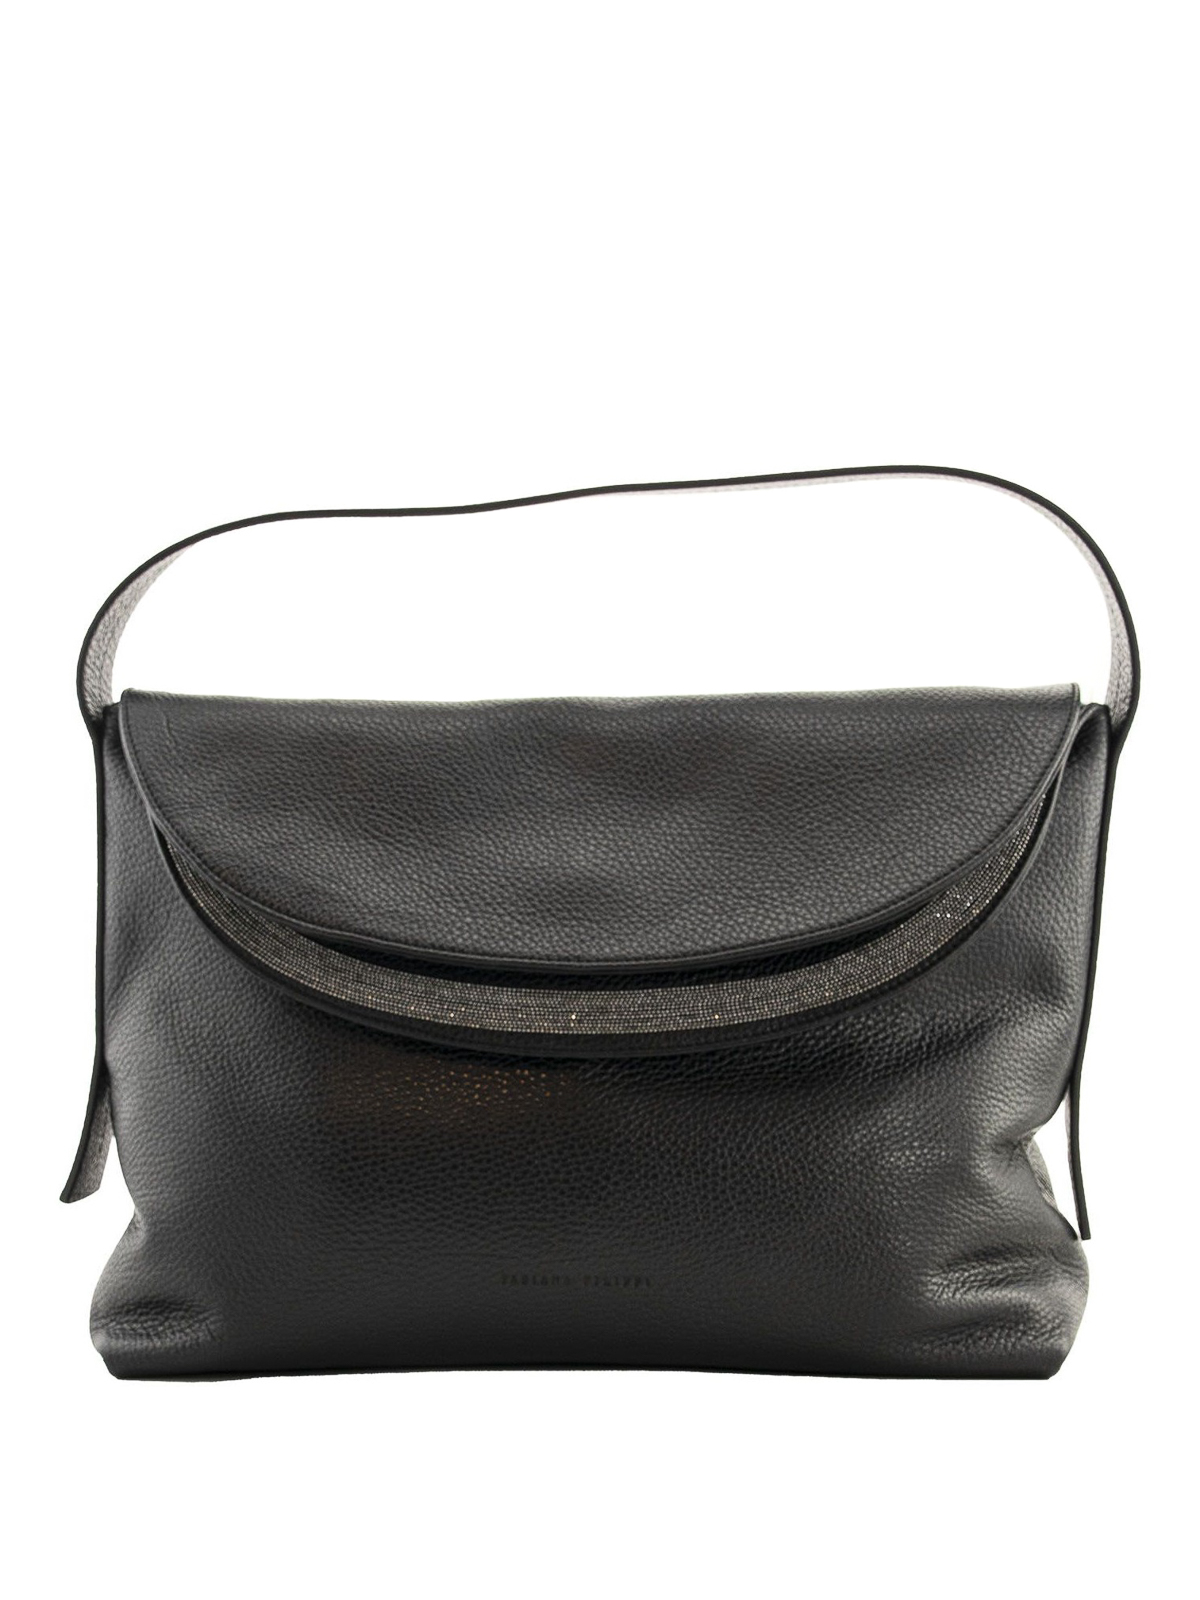 Shoulder bags Fabiana Filippi - Carlotta leather bag - BGD220W501C615VR3